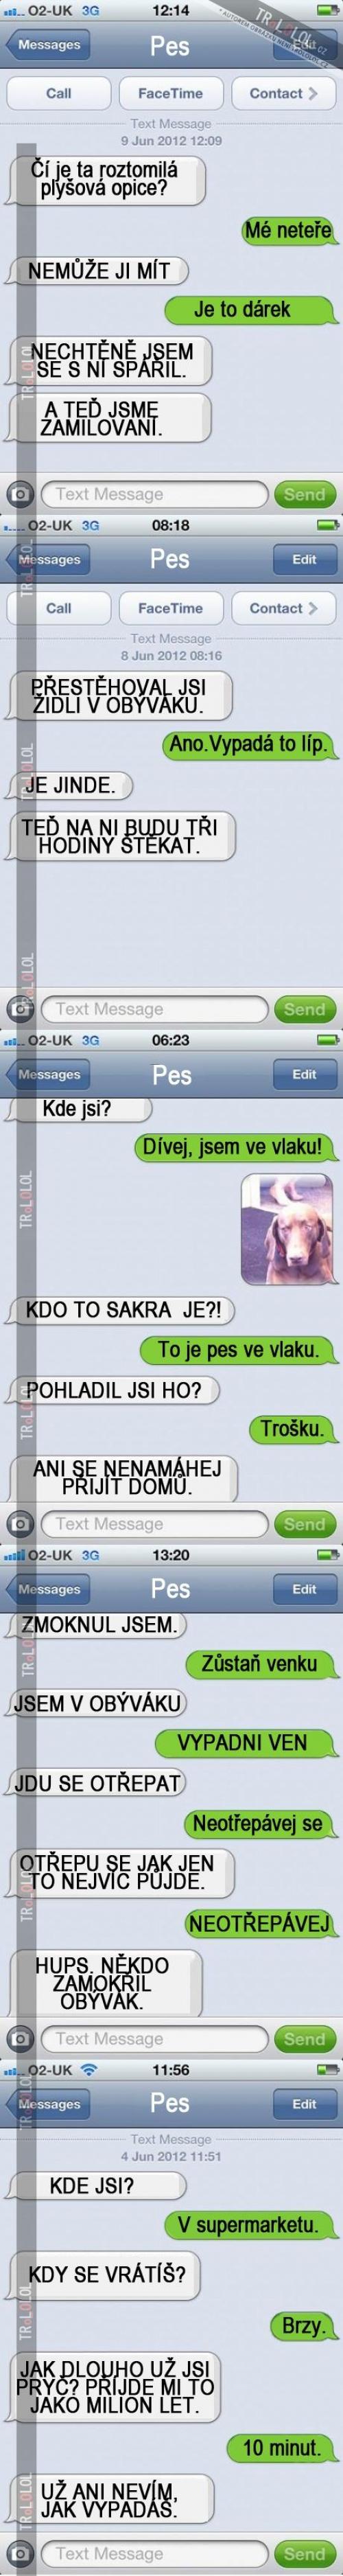  Jak vypadá sms konverzace se psem 